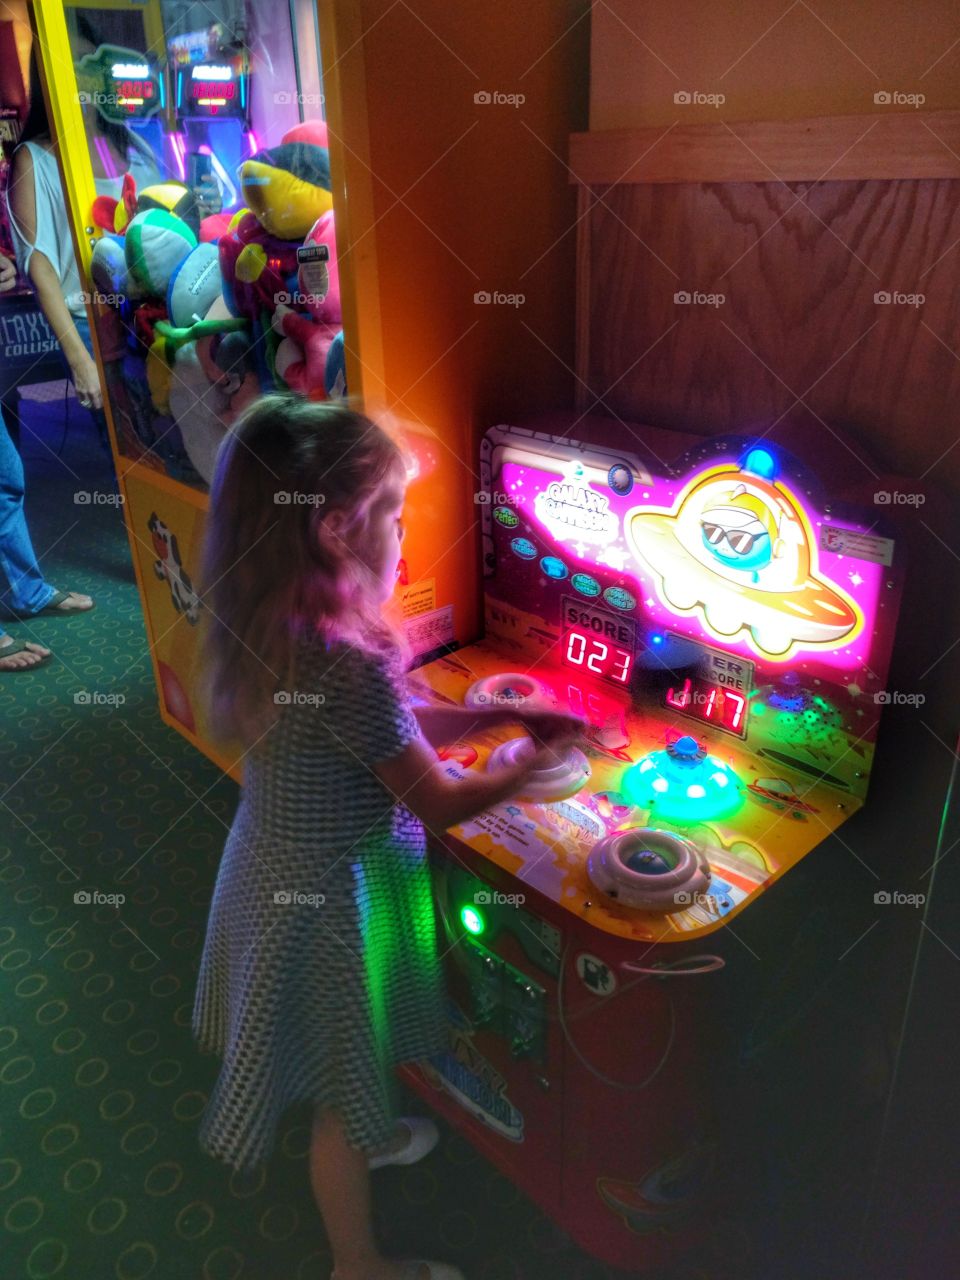 Arcade fun